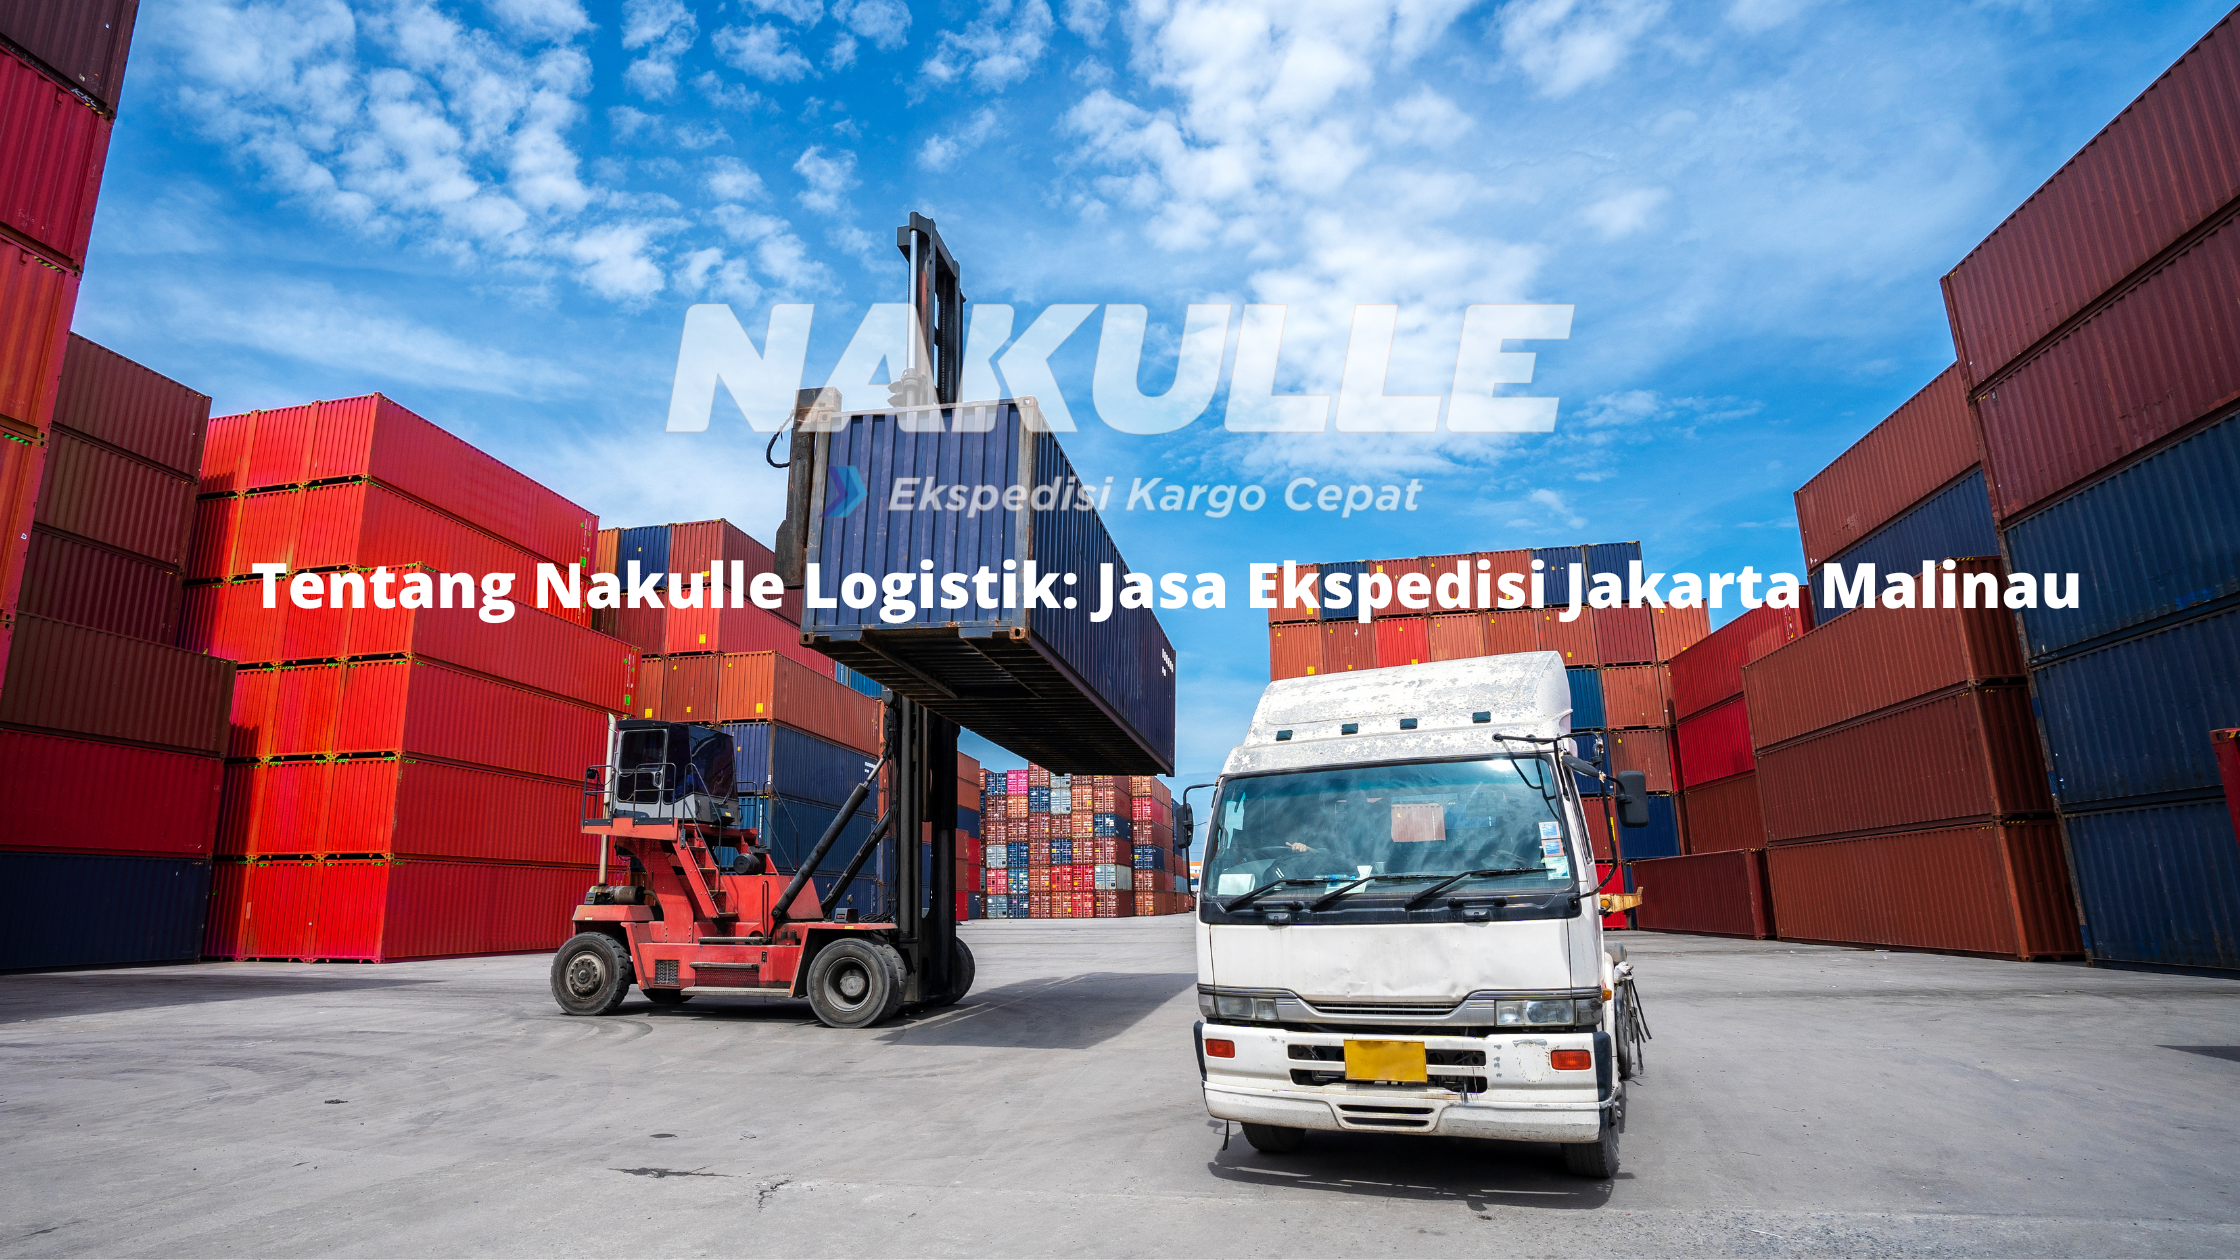 Tentang Nakulle Logistik Jasa Ekspedisi Jakarta Malinau